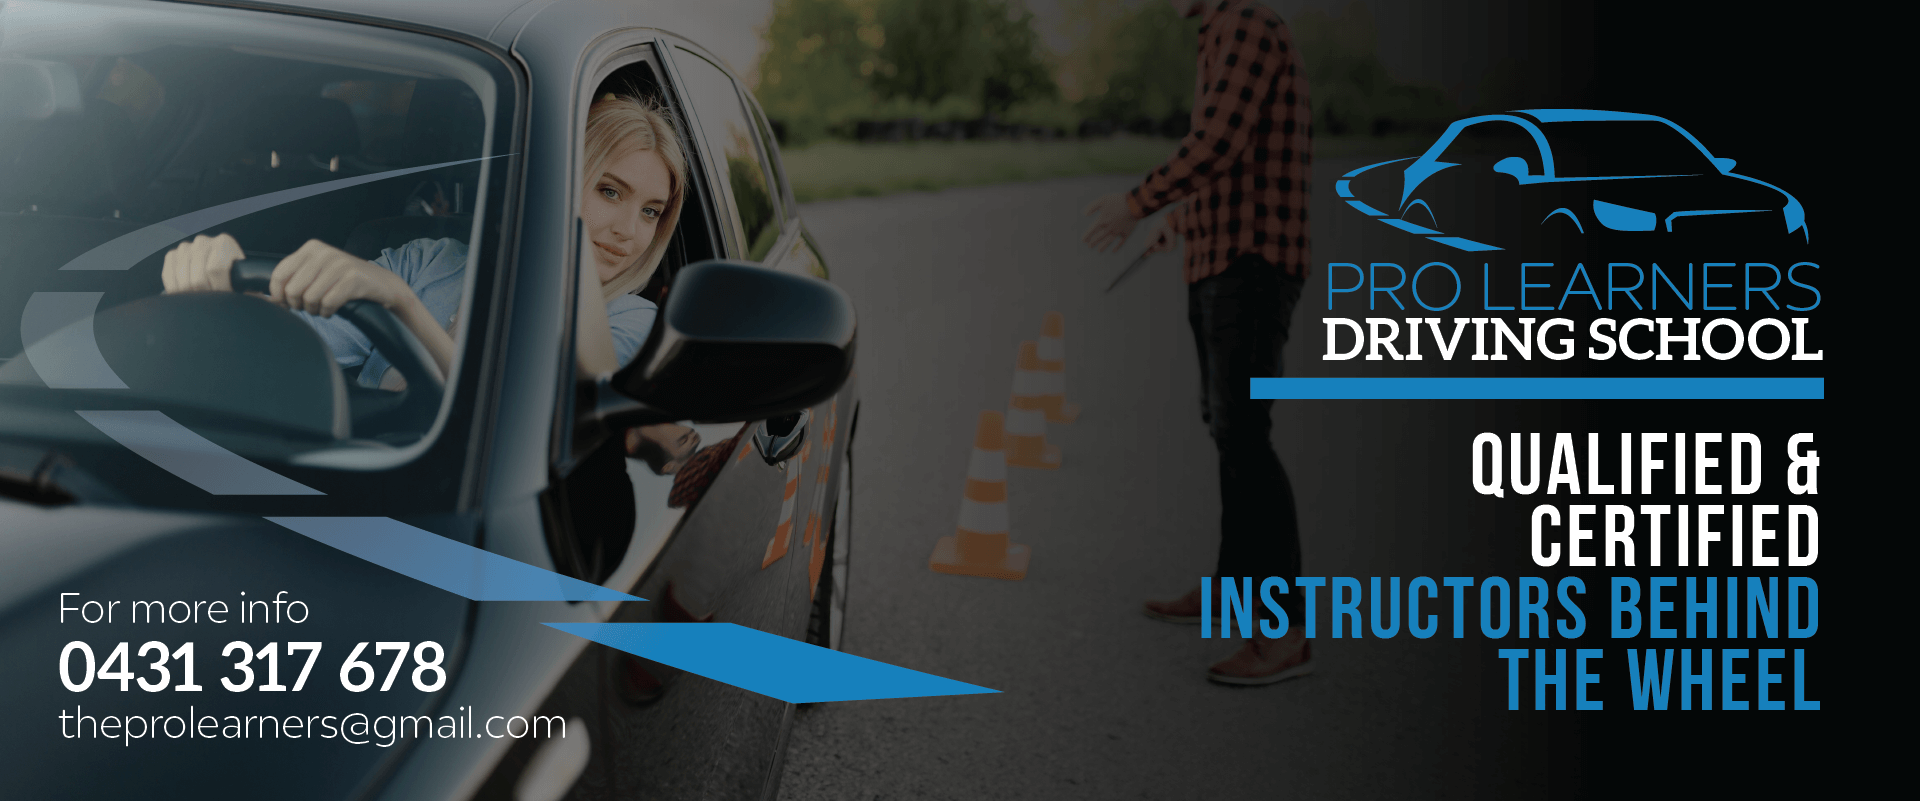 pro-learners-driving-school-bnr2